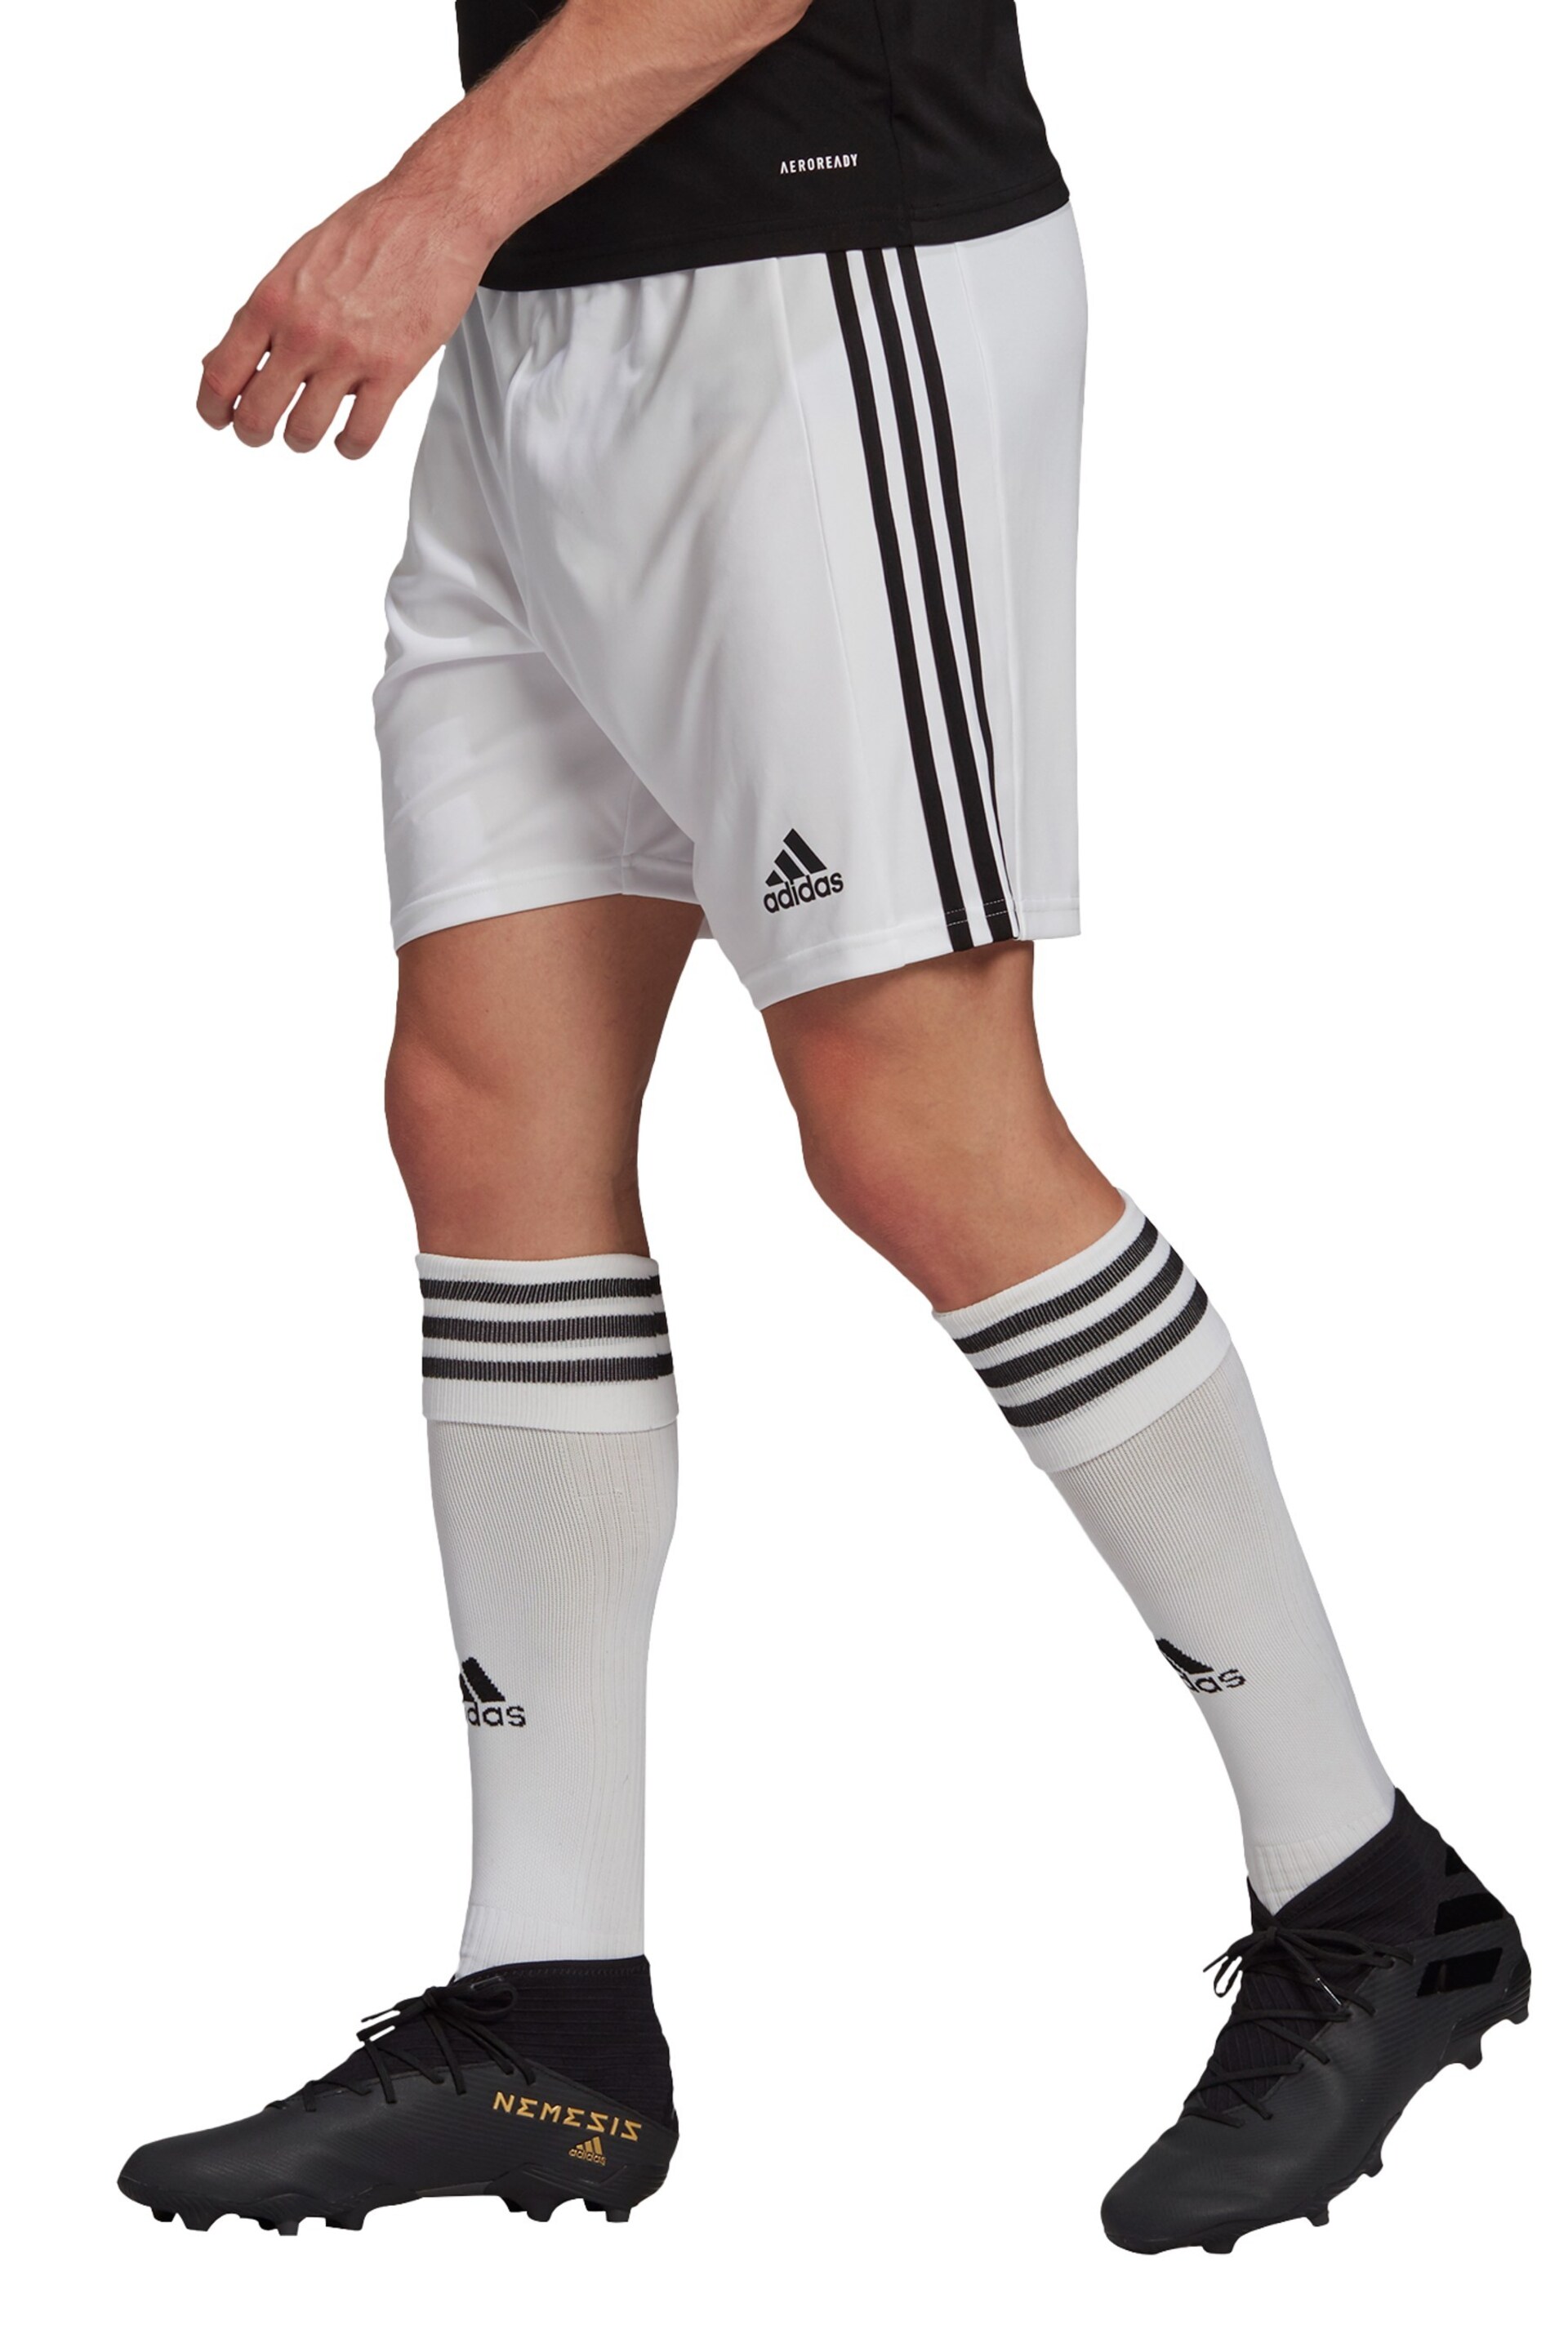 adidas White Football Squadra Shorts - Image 3 of 6